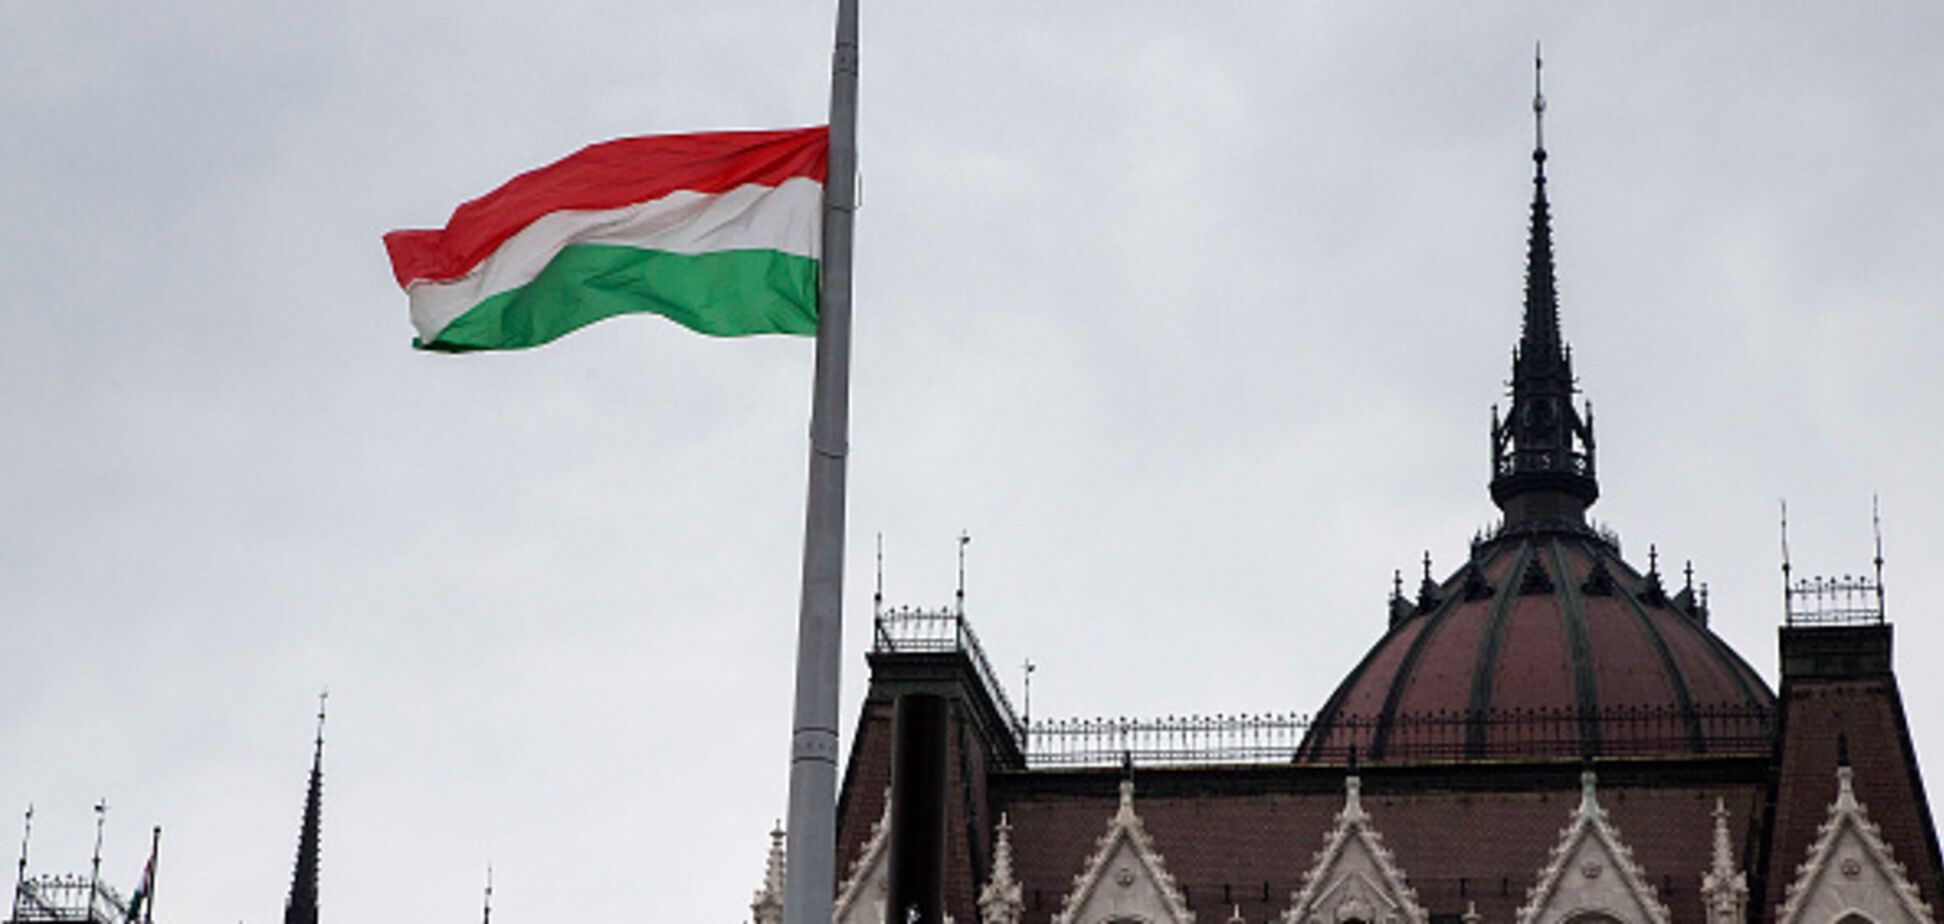 Угорщина після скандалу з Україною дала Кремлю 'сигнал' щодо санкцій